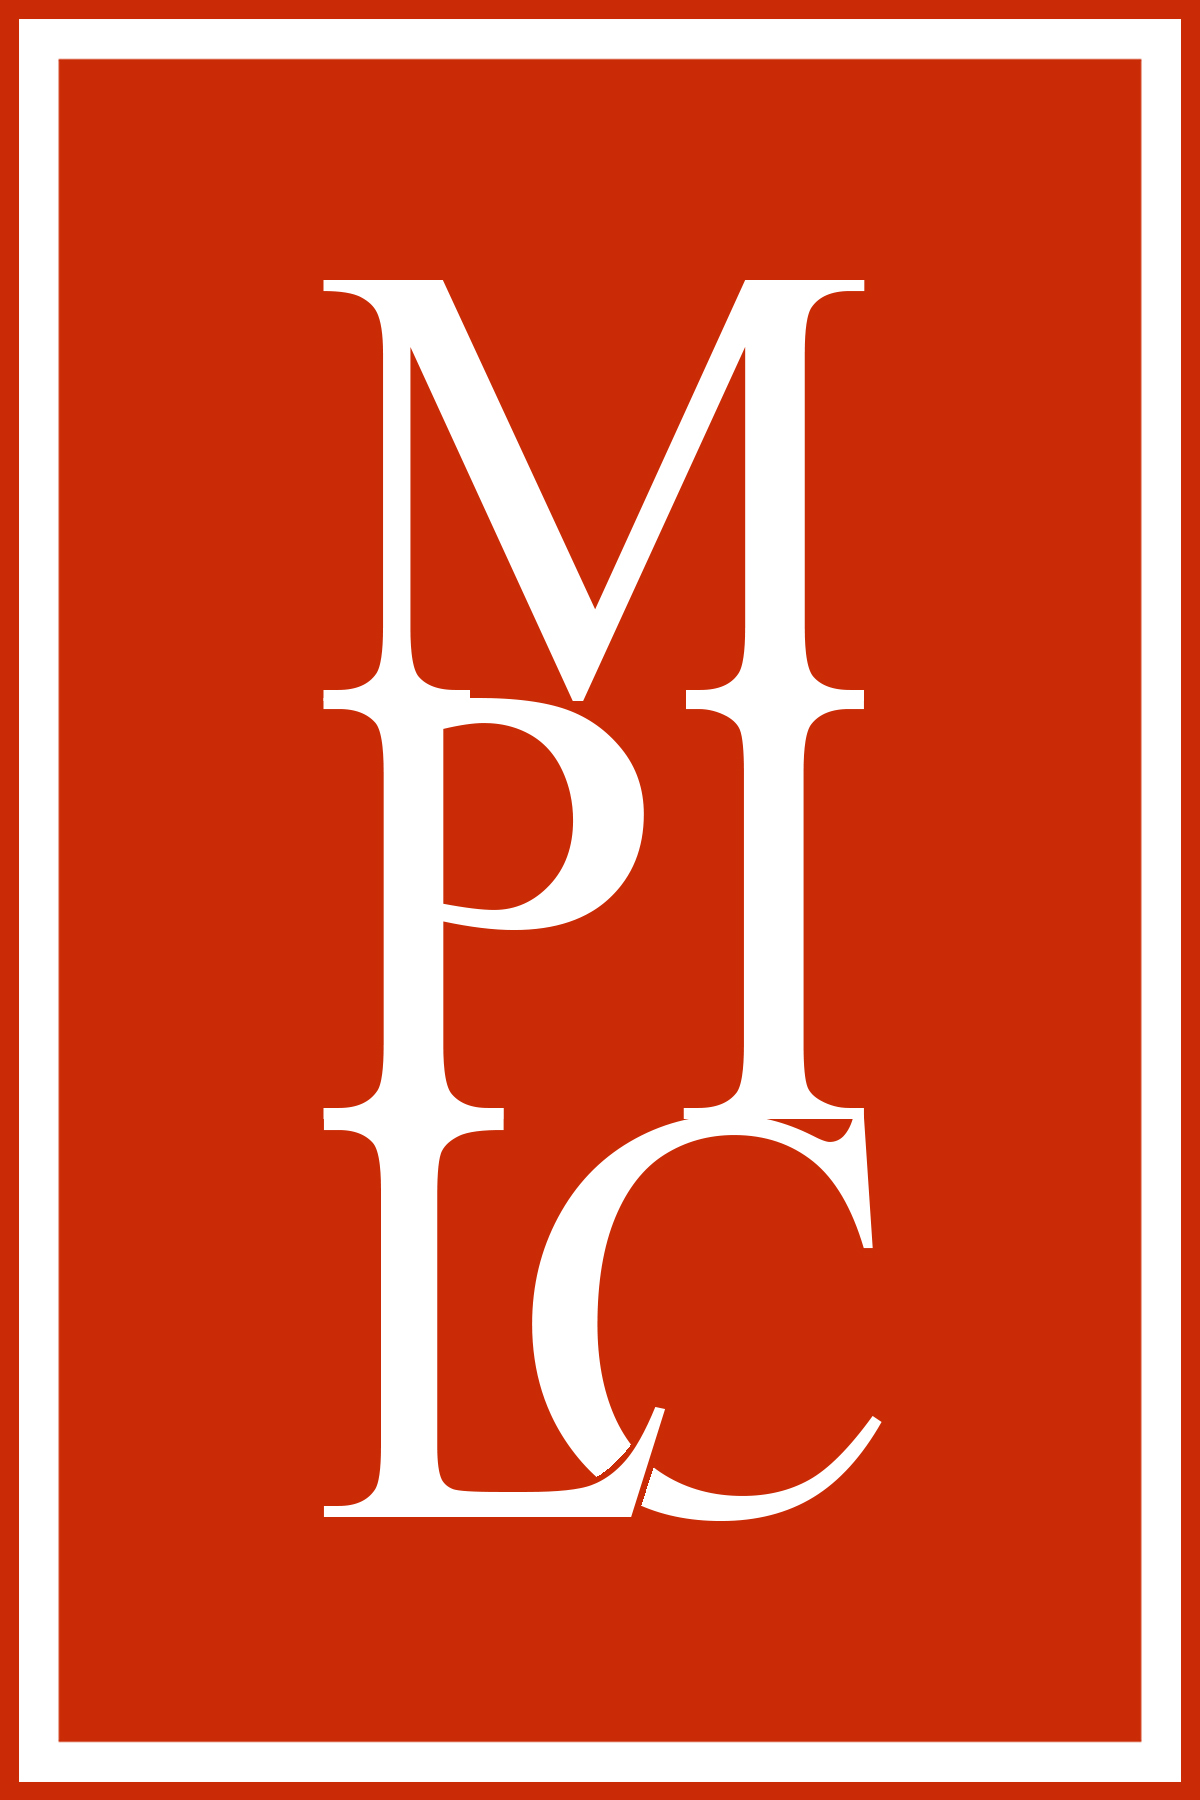 Memphis Public Interest Law Center